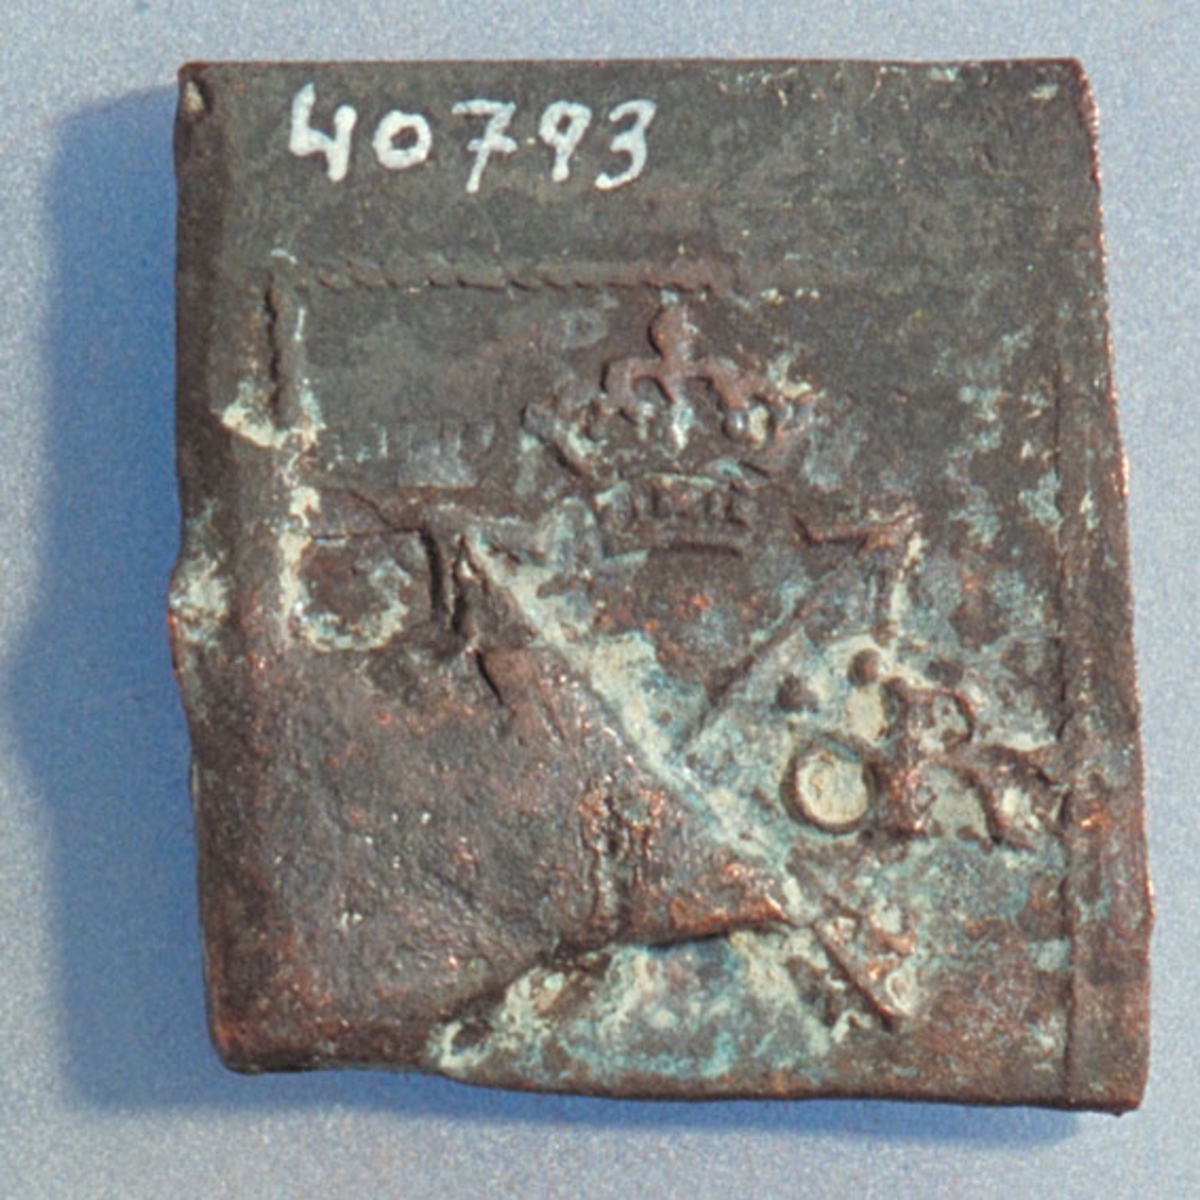 1- öre
Fyrkantigt mynt.
Bägge sidor slitna och korroderade. Frånsidan har en valsklump.
Vikt: 24,2 gram.